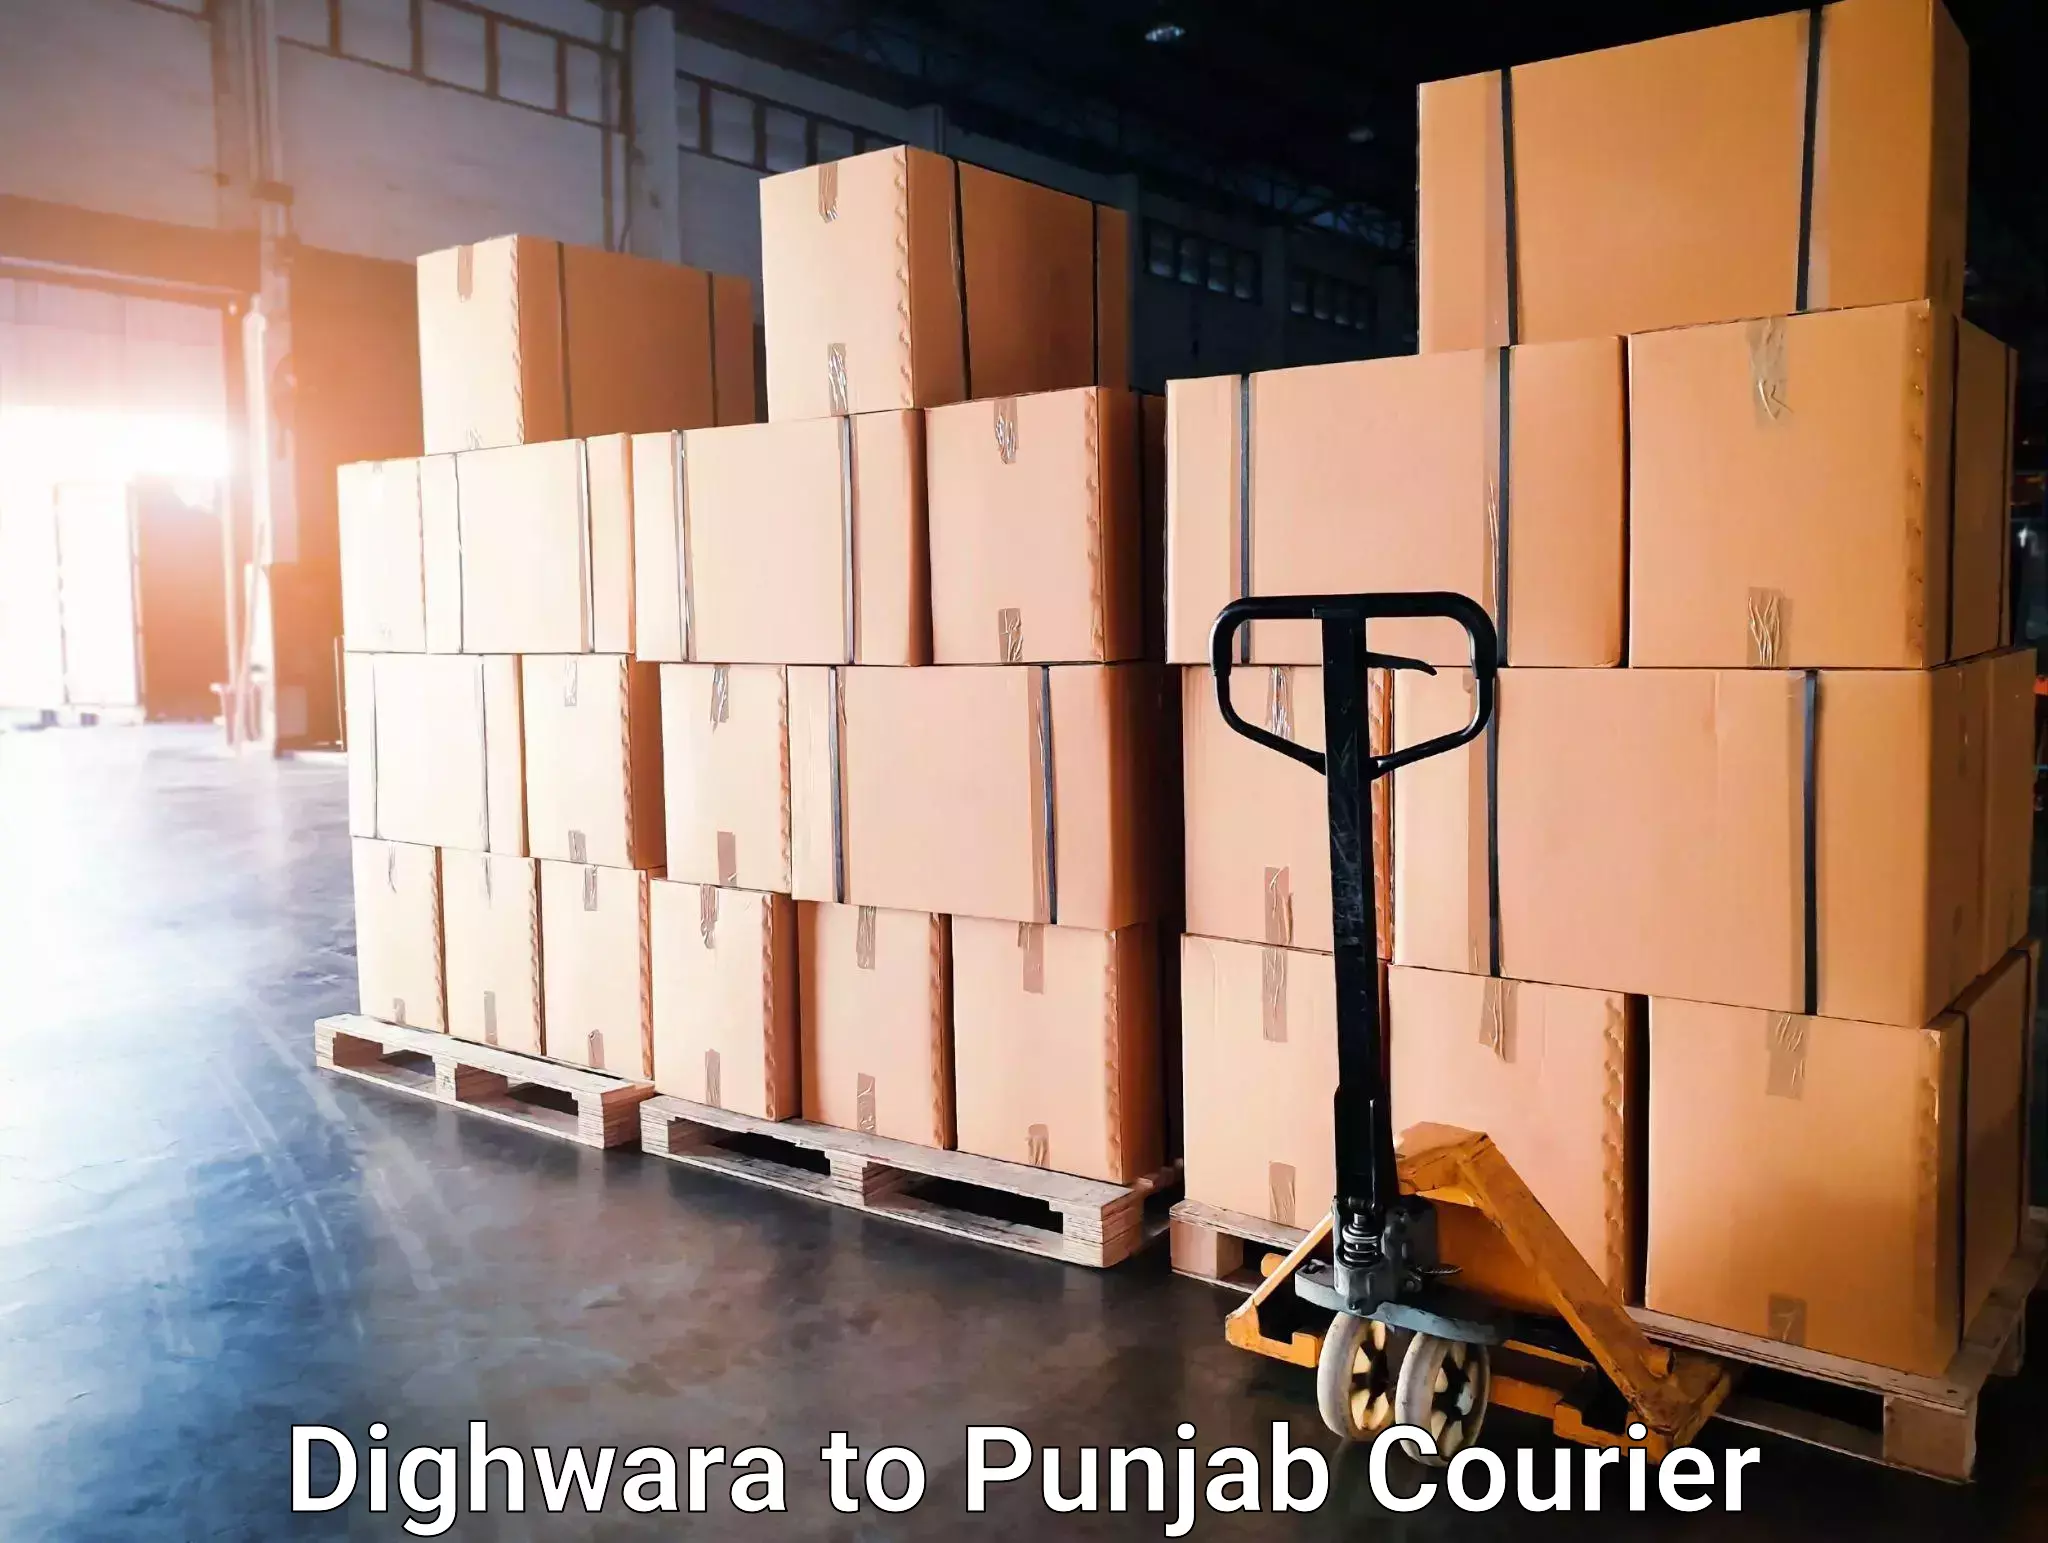 Moving and storage services Dighwara to Punjab